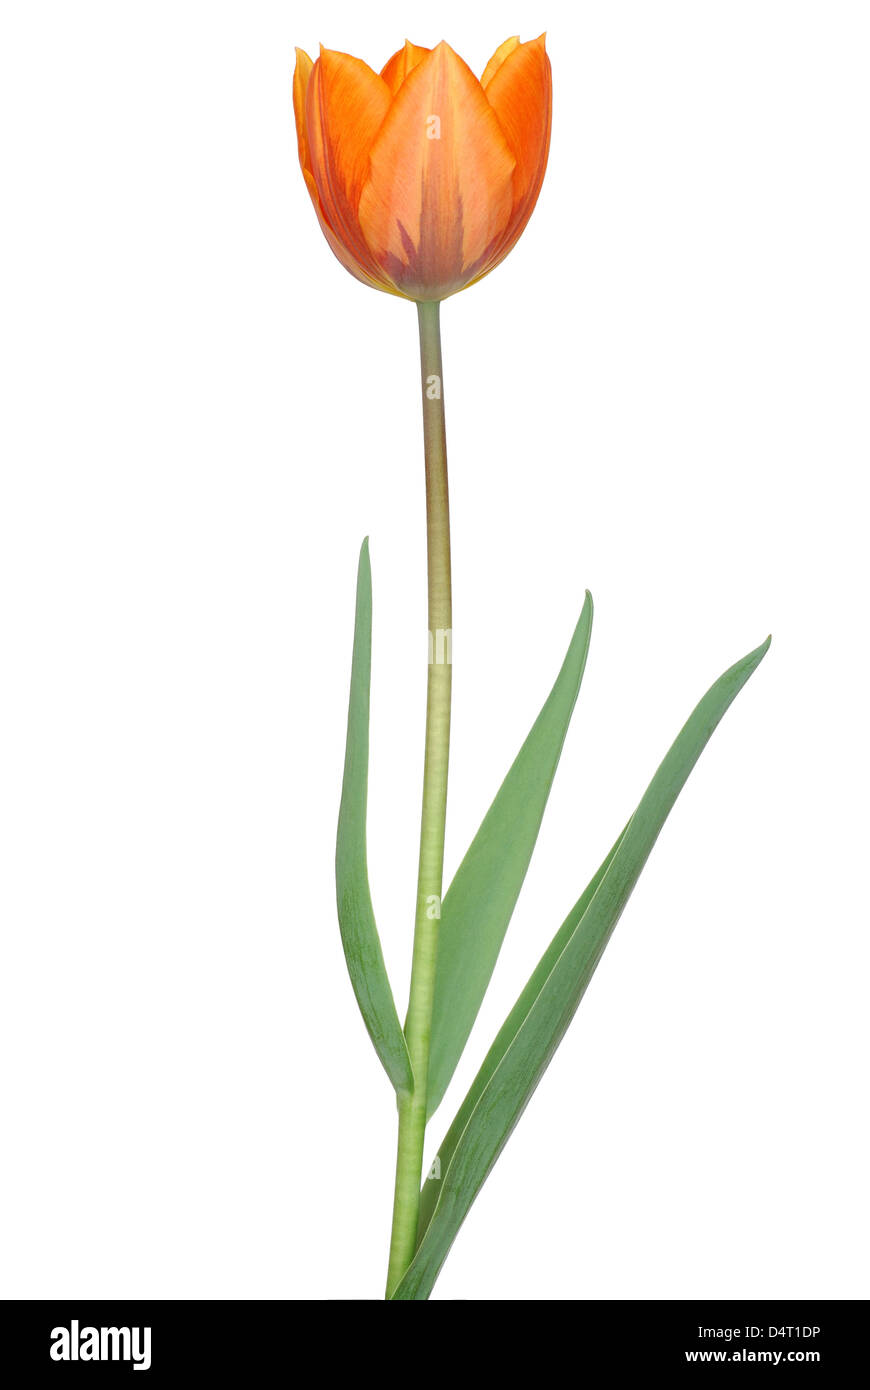 Tulip on White Stock Photo